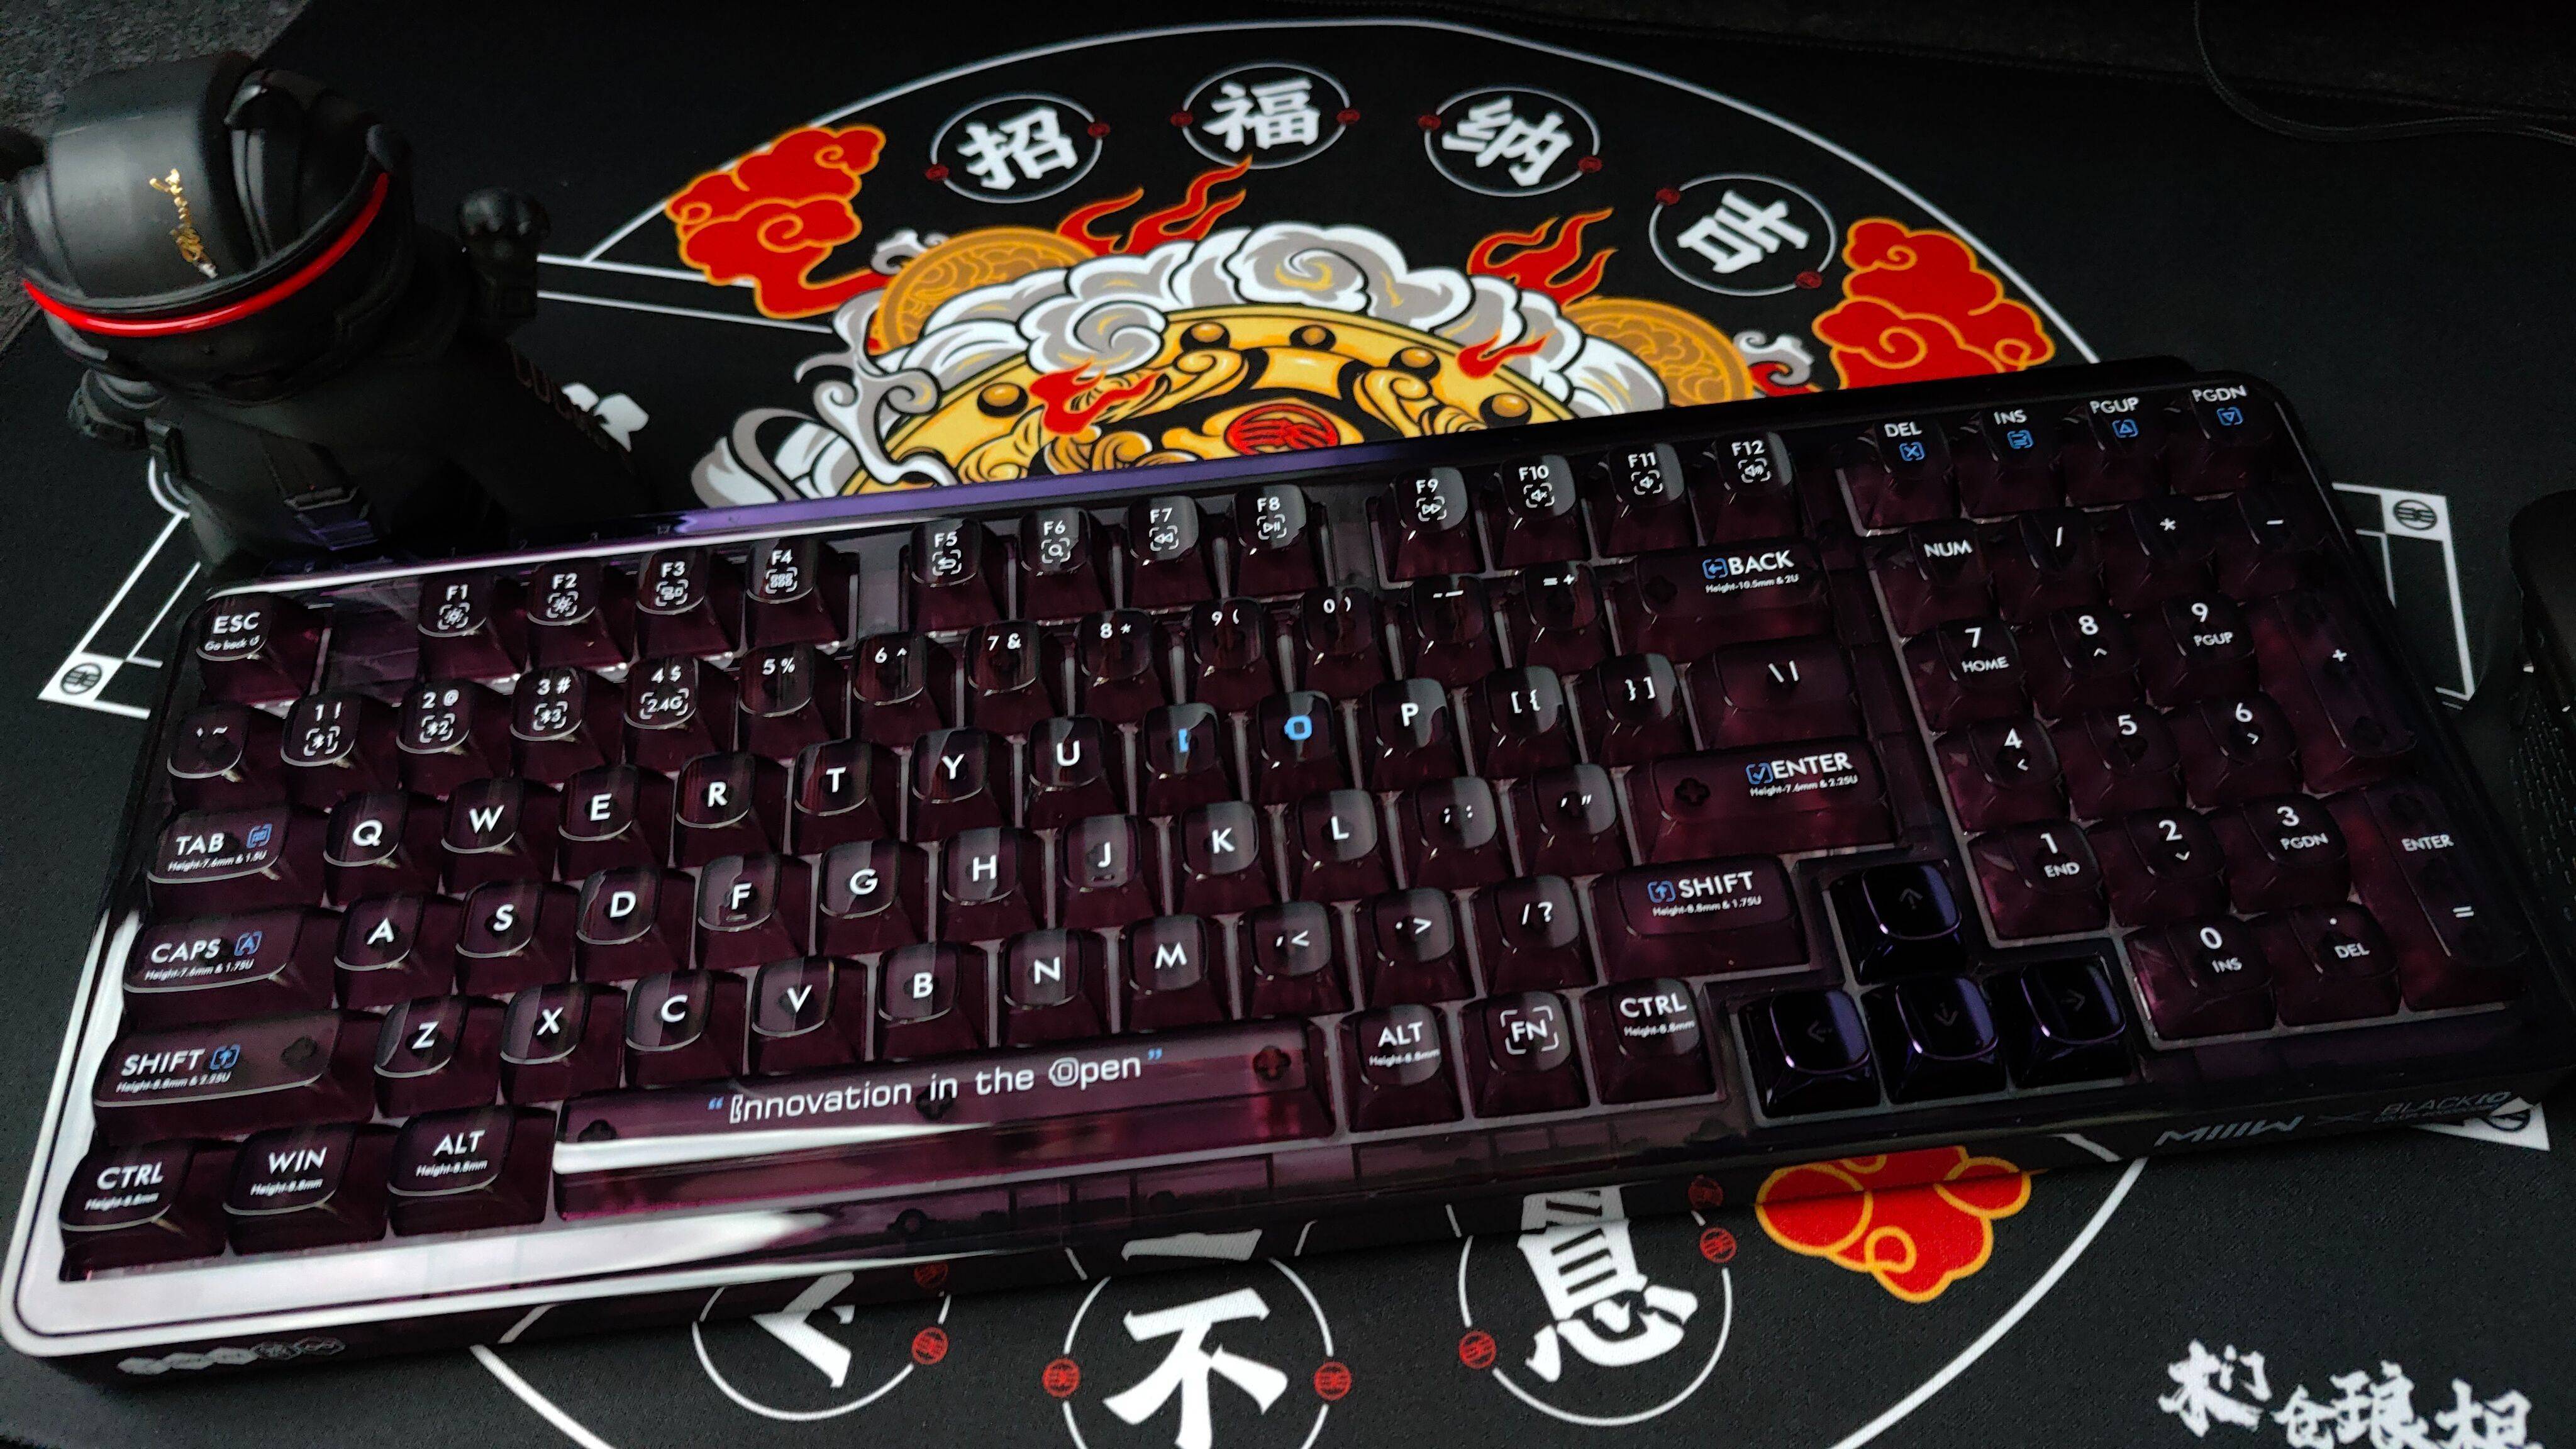 炫酷“黑色晶体” 配置高端价格亲民 这款机械键盘值得入手